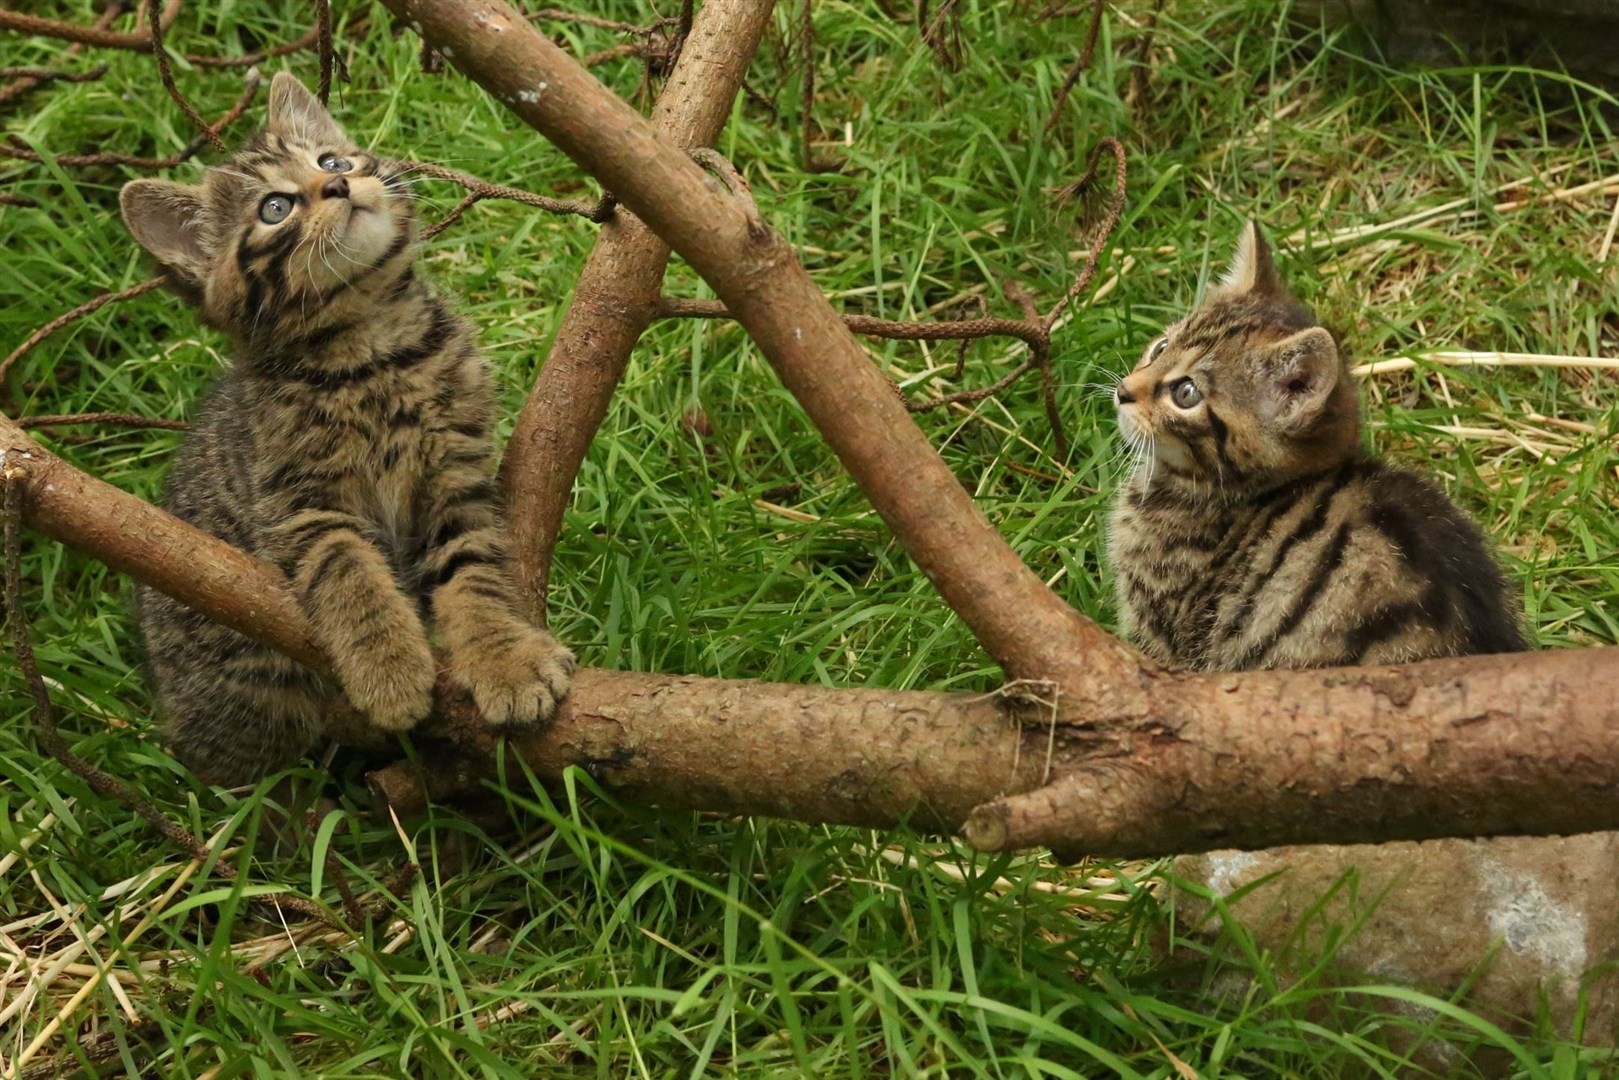 The wildcat kittens explore their home. Picture: Ben Jones.